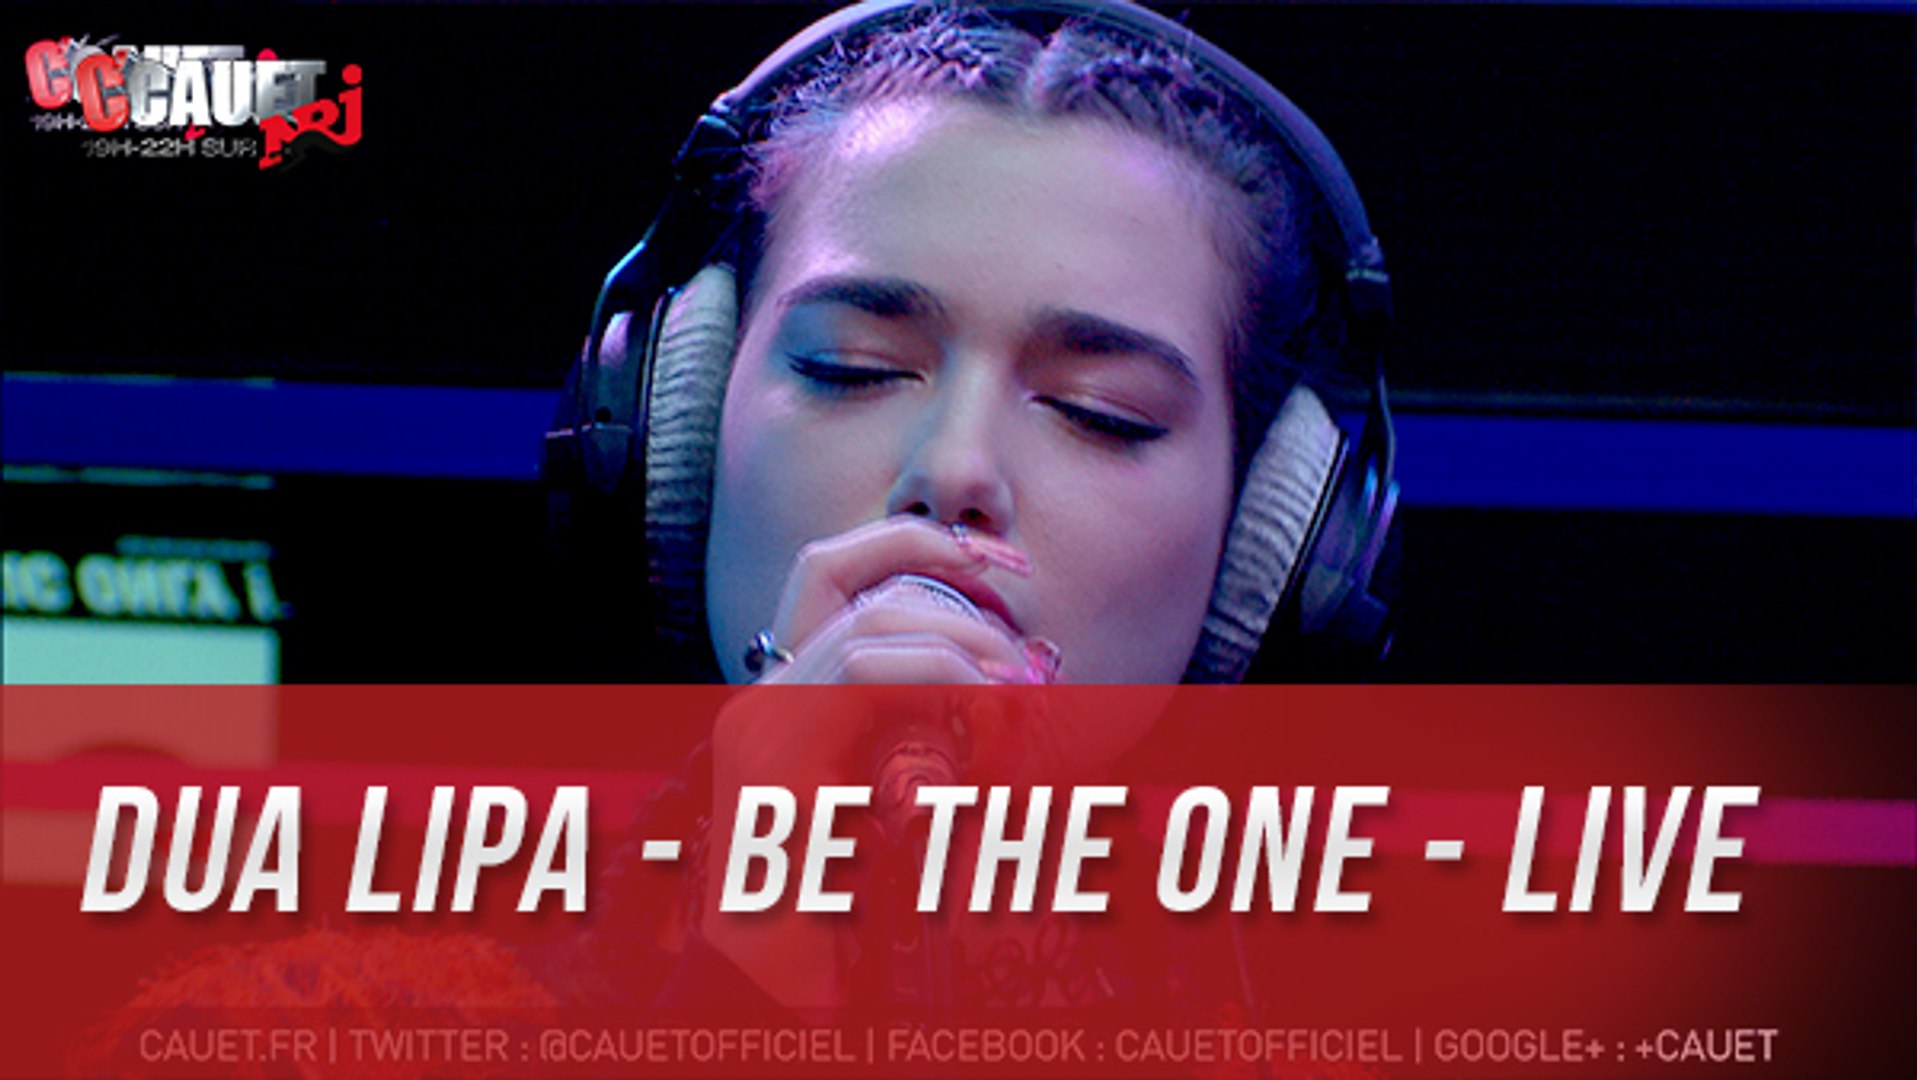 Dua Lipa - Be The One - Live - C'Cauet sur NRJ - Vidéo Dailymotion